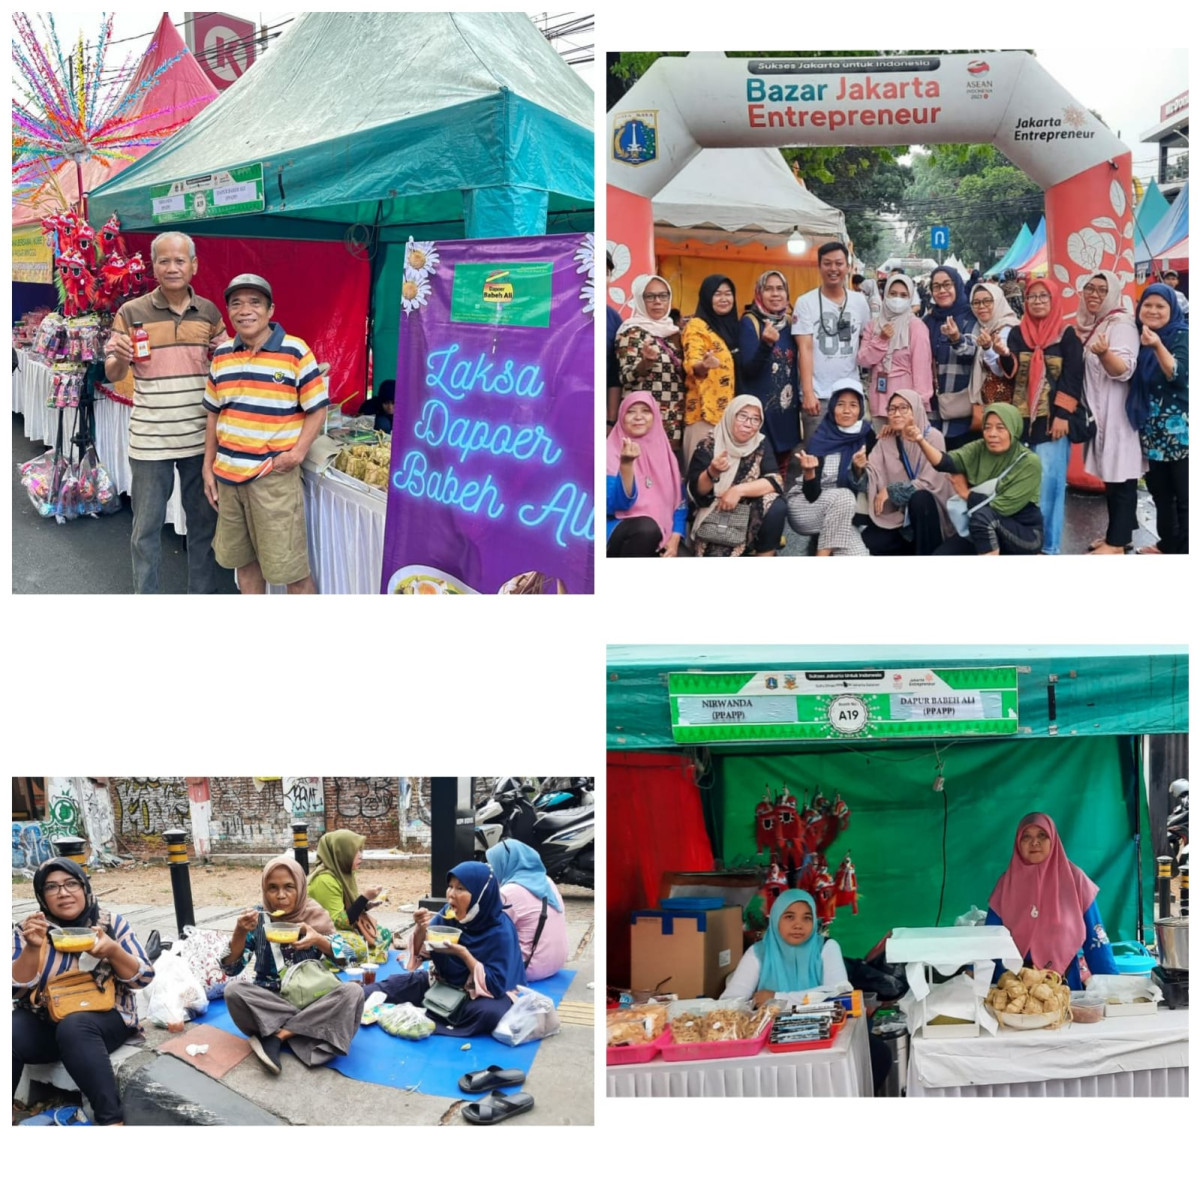 Keikutsertaan Binaan Jakpreneur Jati padang pada Bazaar Festival Bongsang